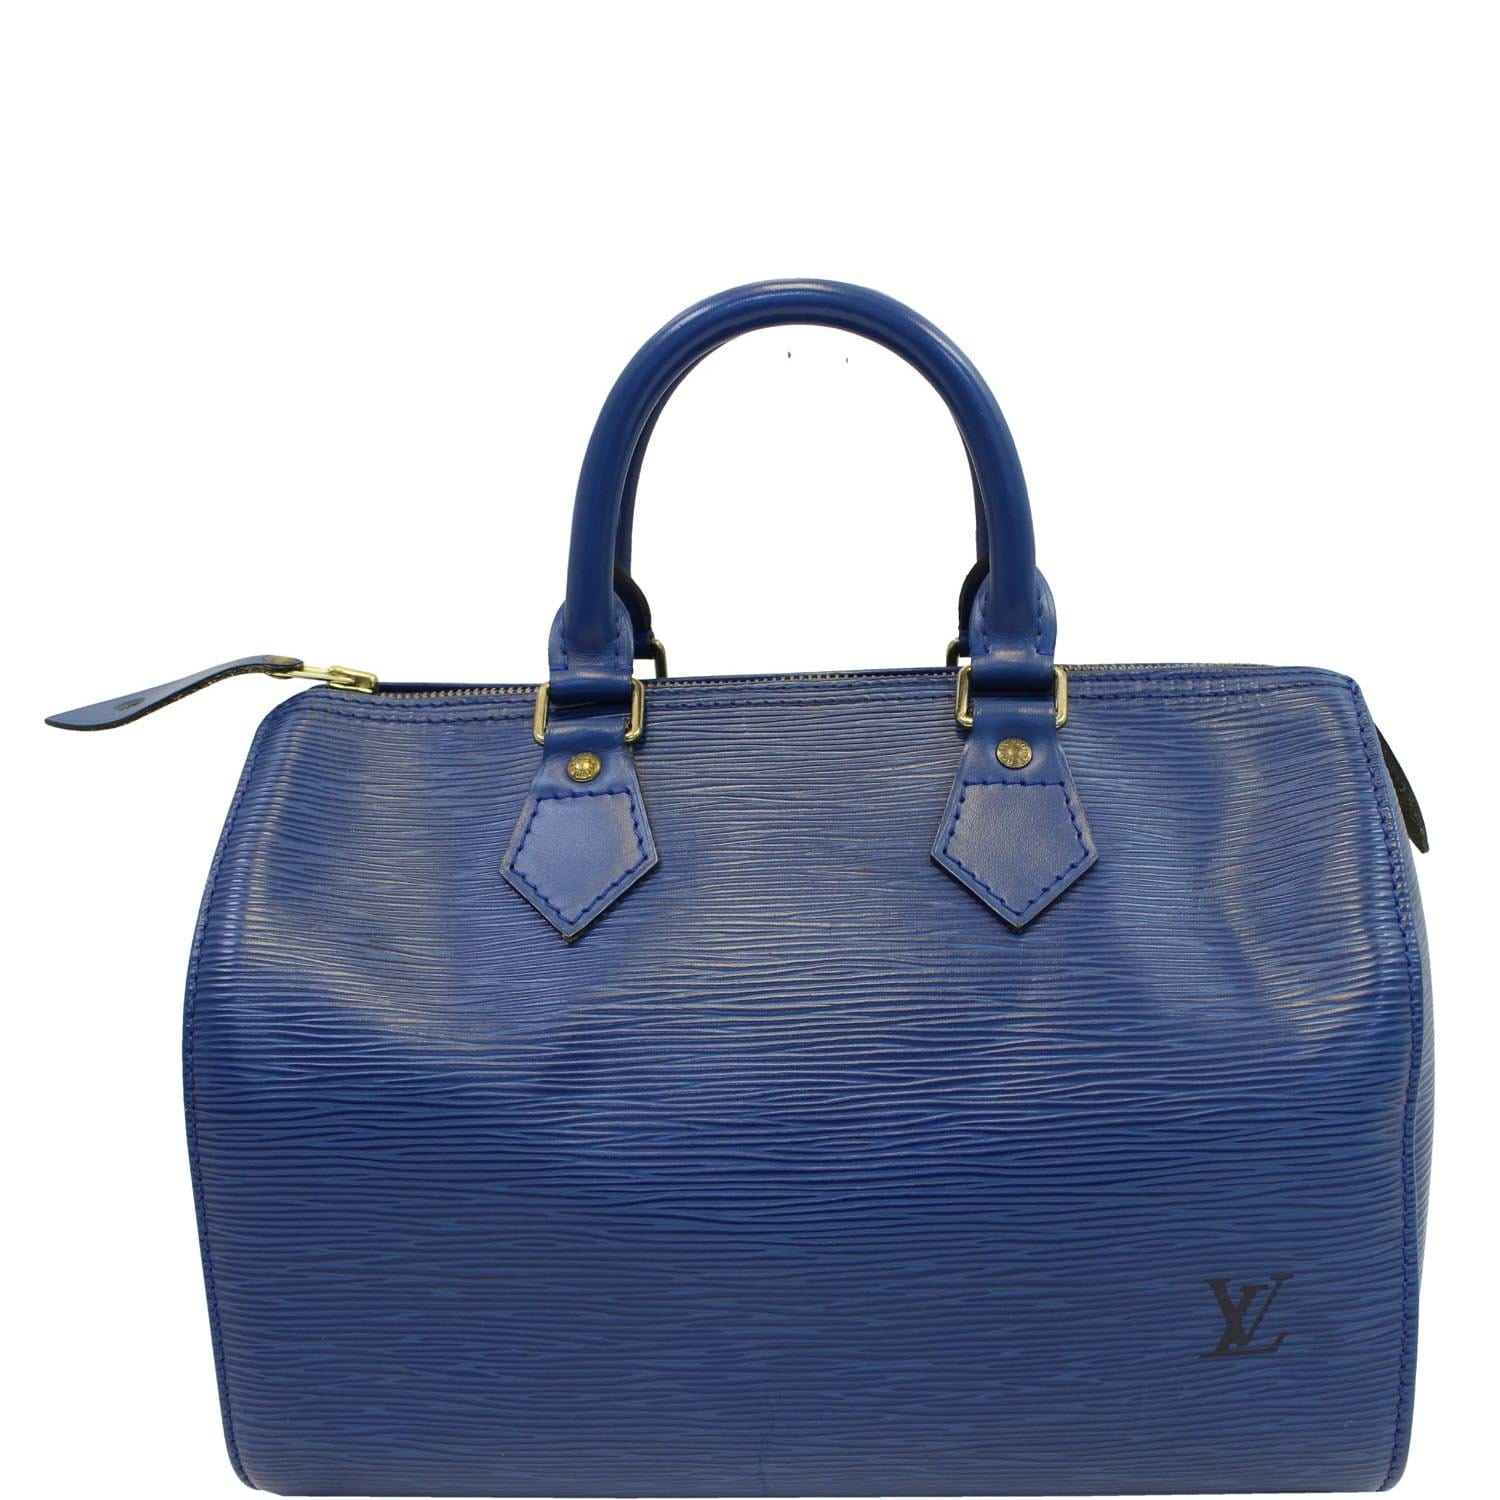 Authentic Louis Vuitton speedy 25 purse